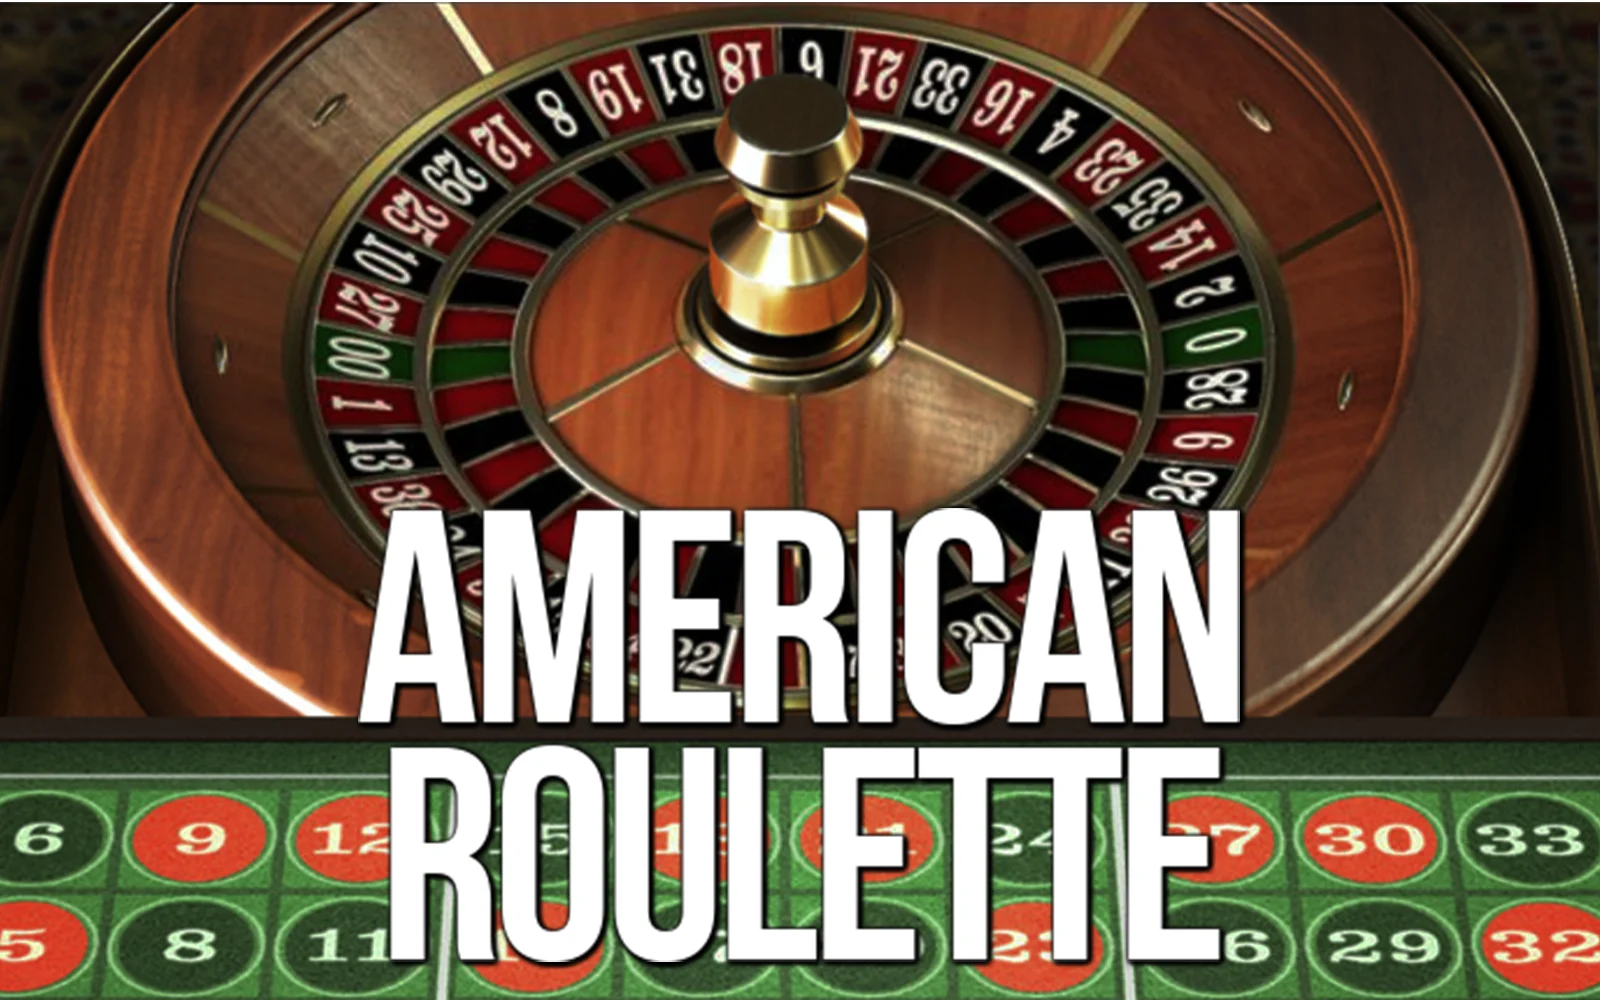 Juega a American Roulette en el casino en línea de Starcasino.be